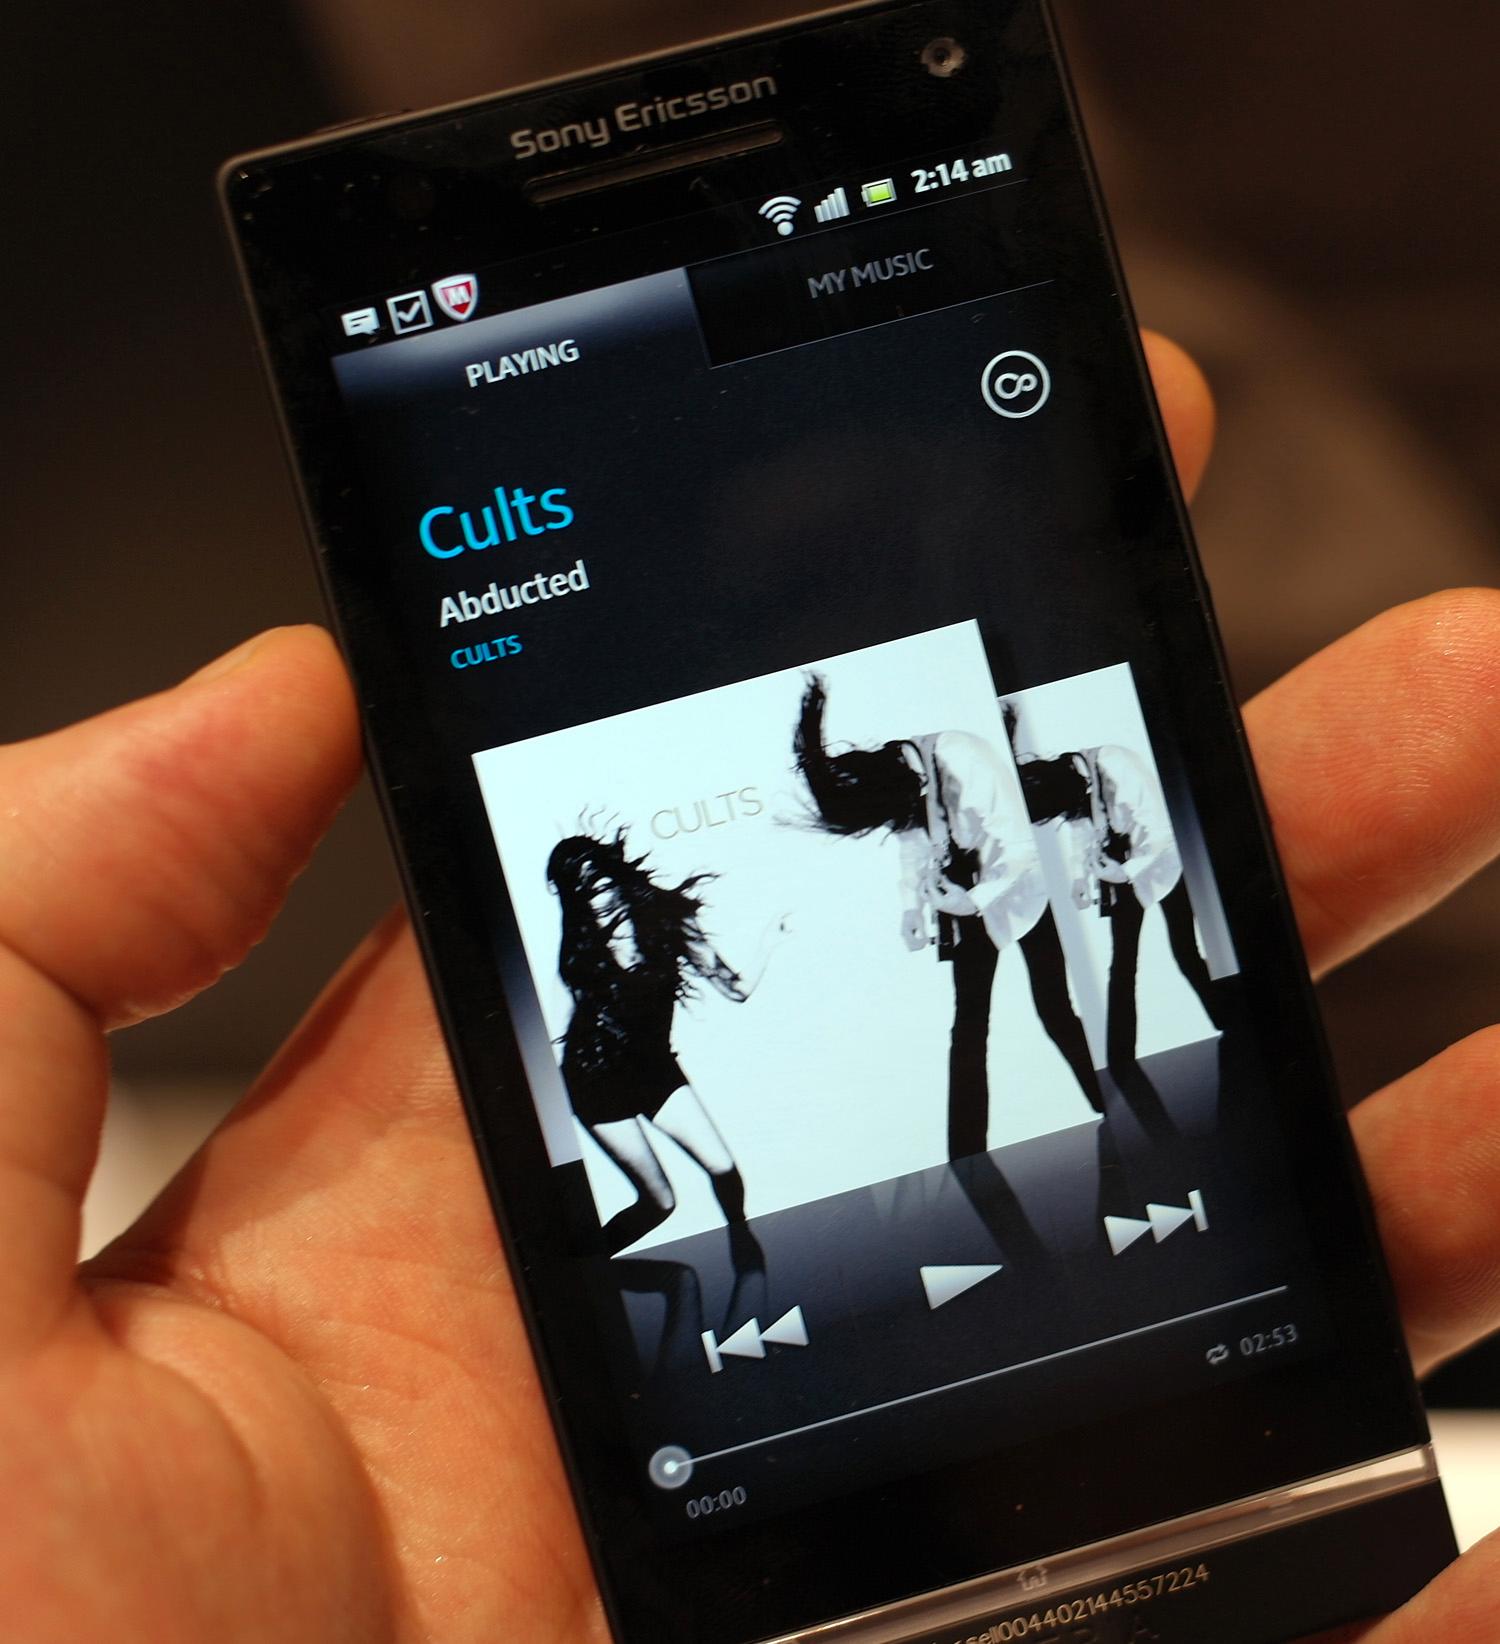 Slik ser musikkspilleren på Xperia S ut.